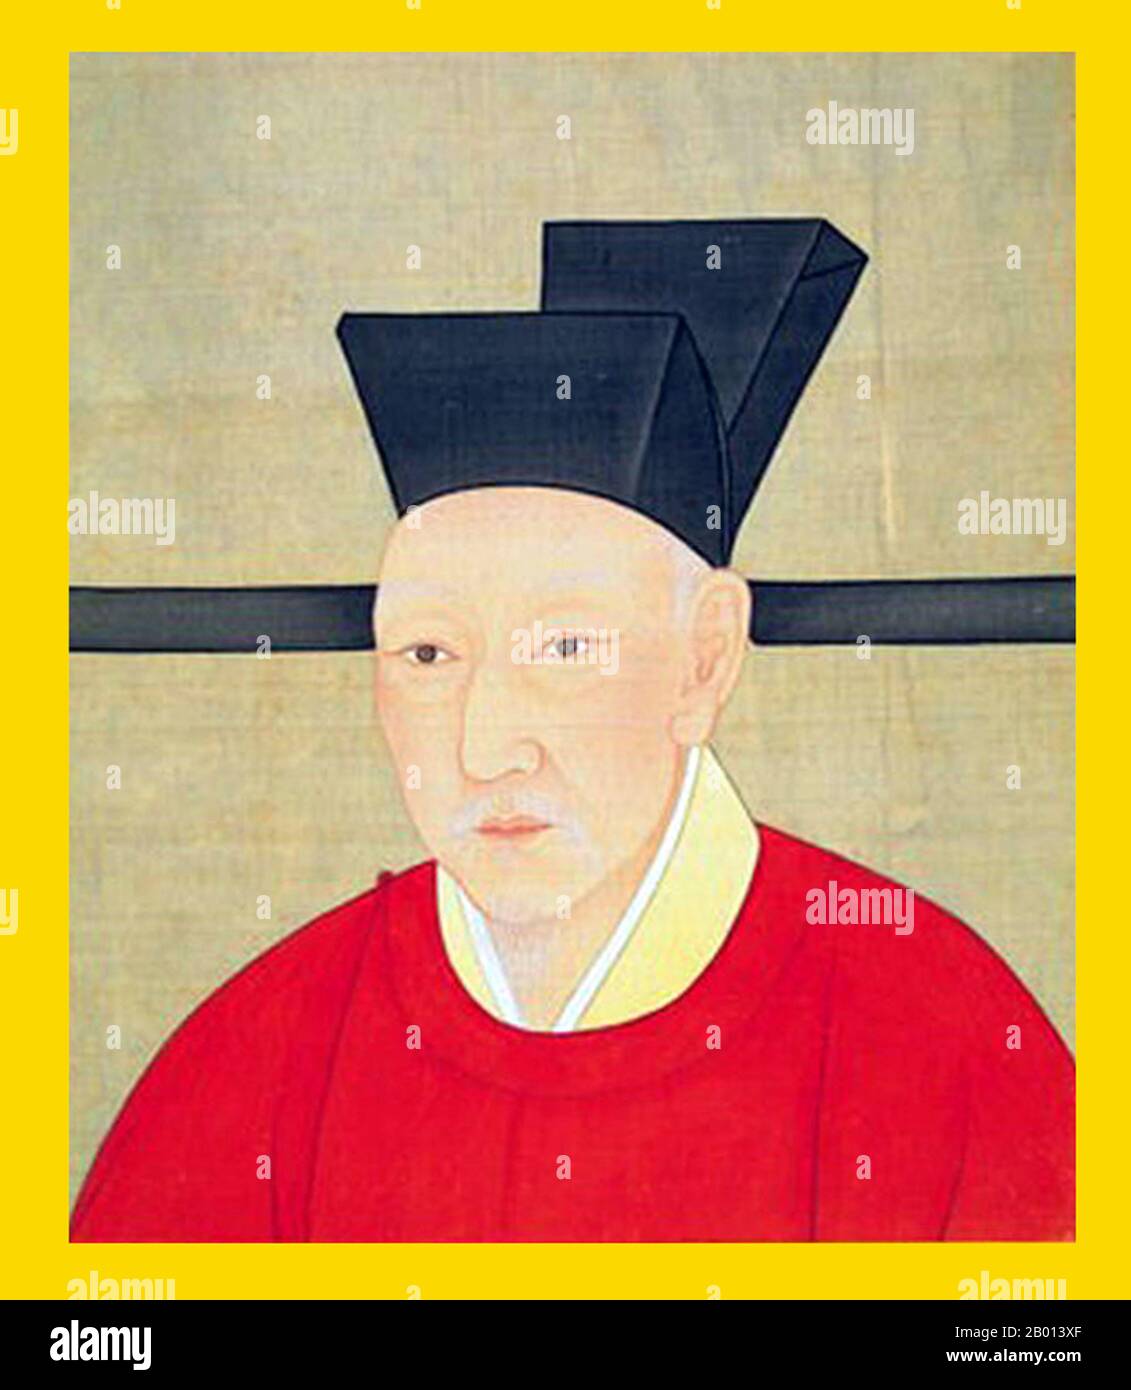 China: Kaiser Gaozong (12. Juni 1107 - 9. November 1187), 10. Herrscher der Song-Dynastie (r. 1127-1129) und 1. Herrscher der südlichen Song-Dynastie (r. 1129-1162). Hängende Schriftrolle Malerei, c. 1127-1162. Gaozong, persönlicher Name Zhao Gou und Höflichkeitsname Deji, war der zehnte Kaiser der Nördlichen Song Dynastie. Nachdem die Kaiser Qinzong und Huizong von den Jurchen erobert wurden, wurde er Kaiser und gründete das Südliche Song-Reich in Lin'an (modernes Hangzhou). Während seiner Herrschaft griff Jurchens oft das Südliche Song-Reich an. Stockfoto